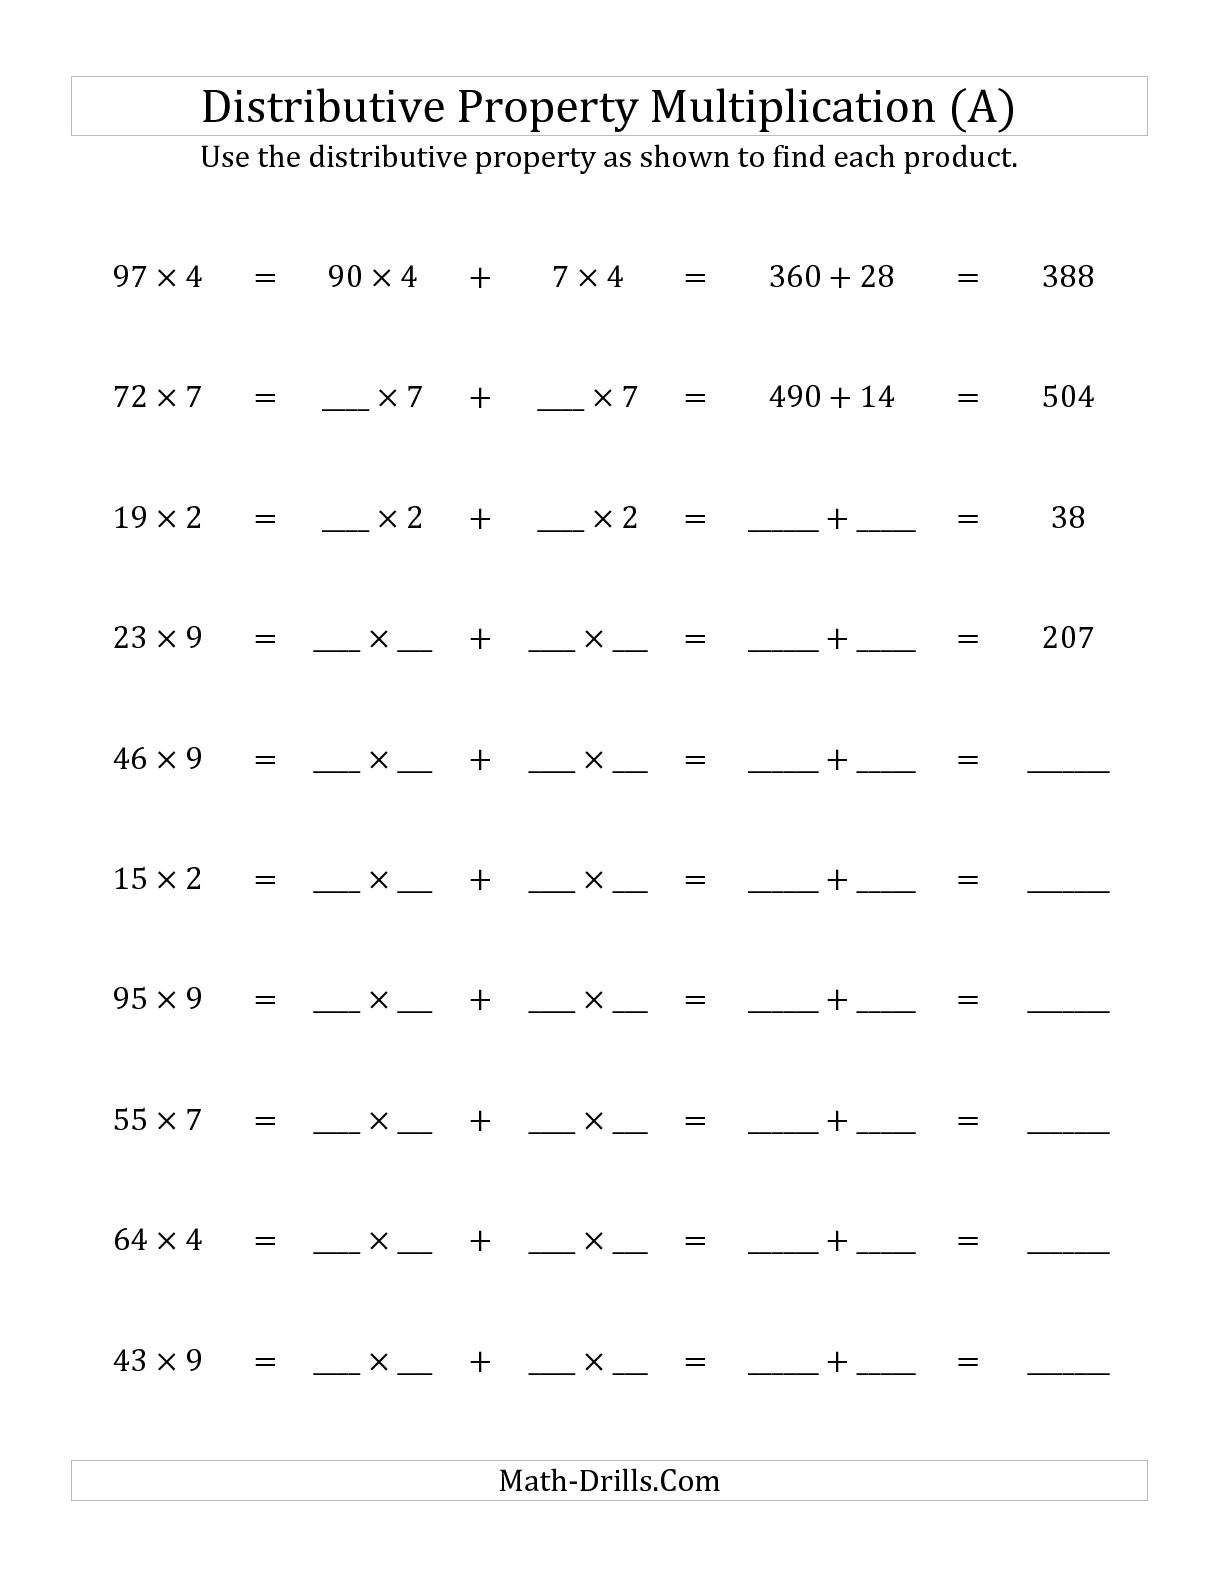 Distributive Property Multiplication Worksheets Image